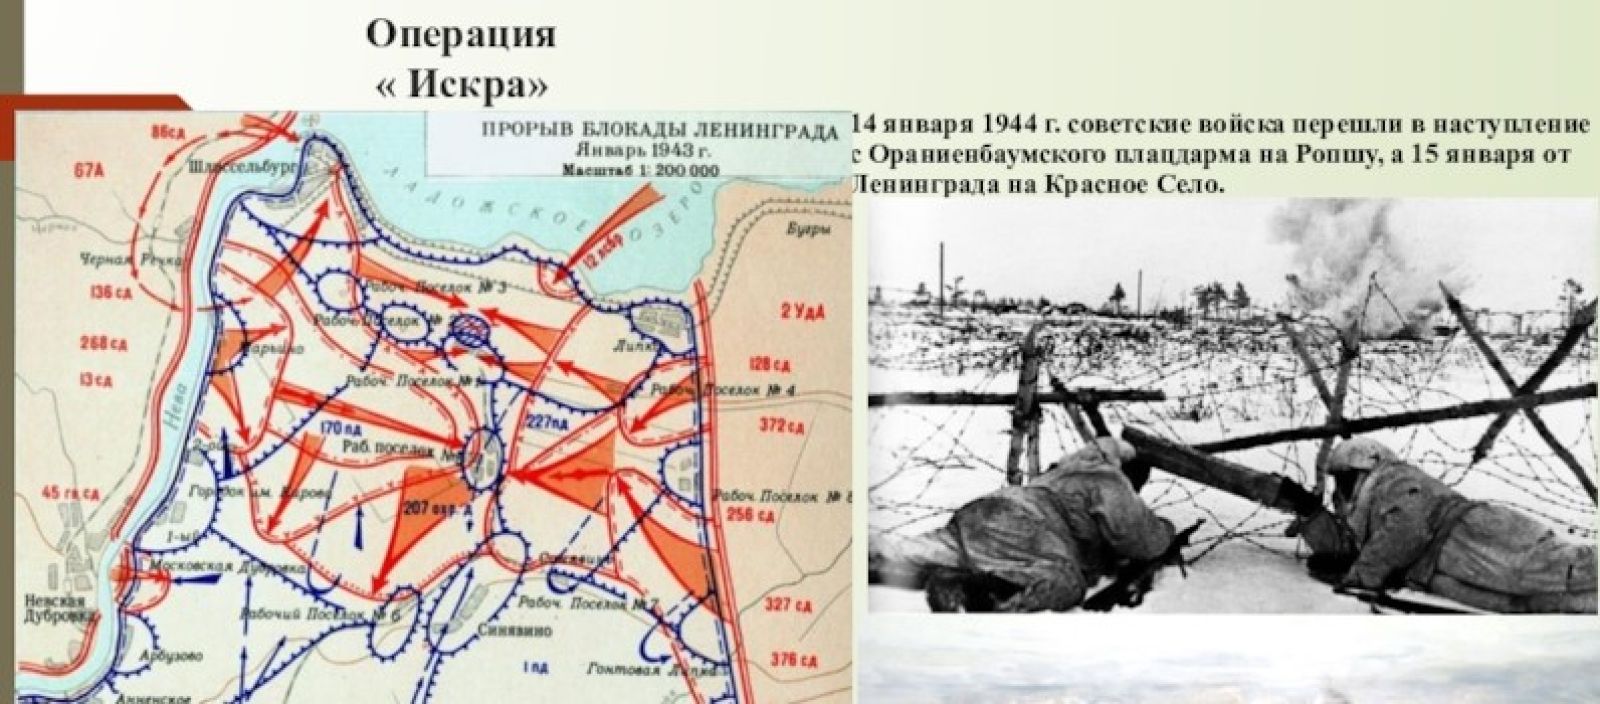 Старая зона блокады. Карта прорыва блокады Ленинграда в 1943 году. Прорыв блокады Ленинграда карта 1944.